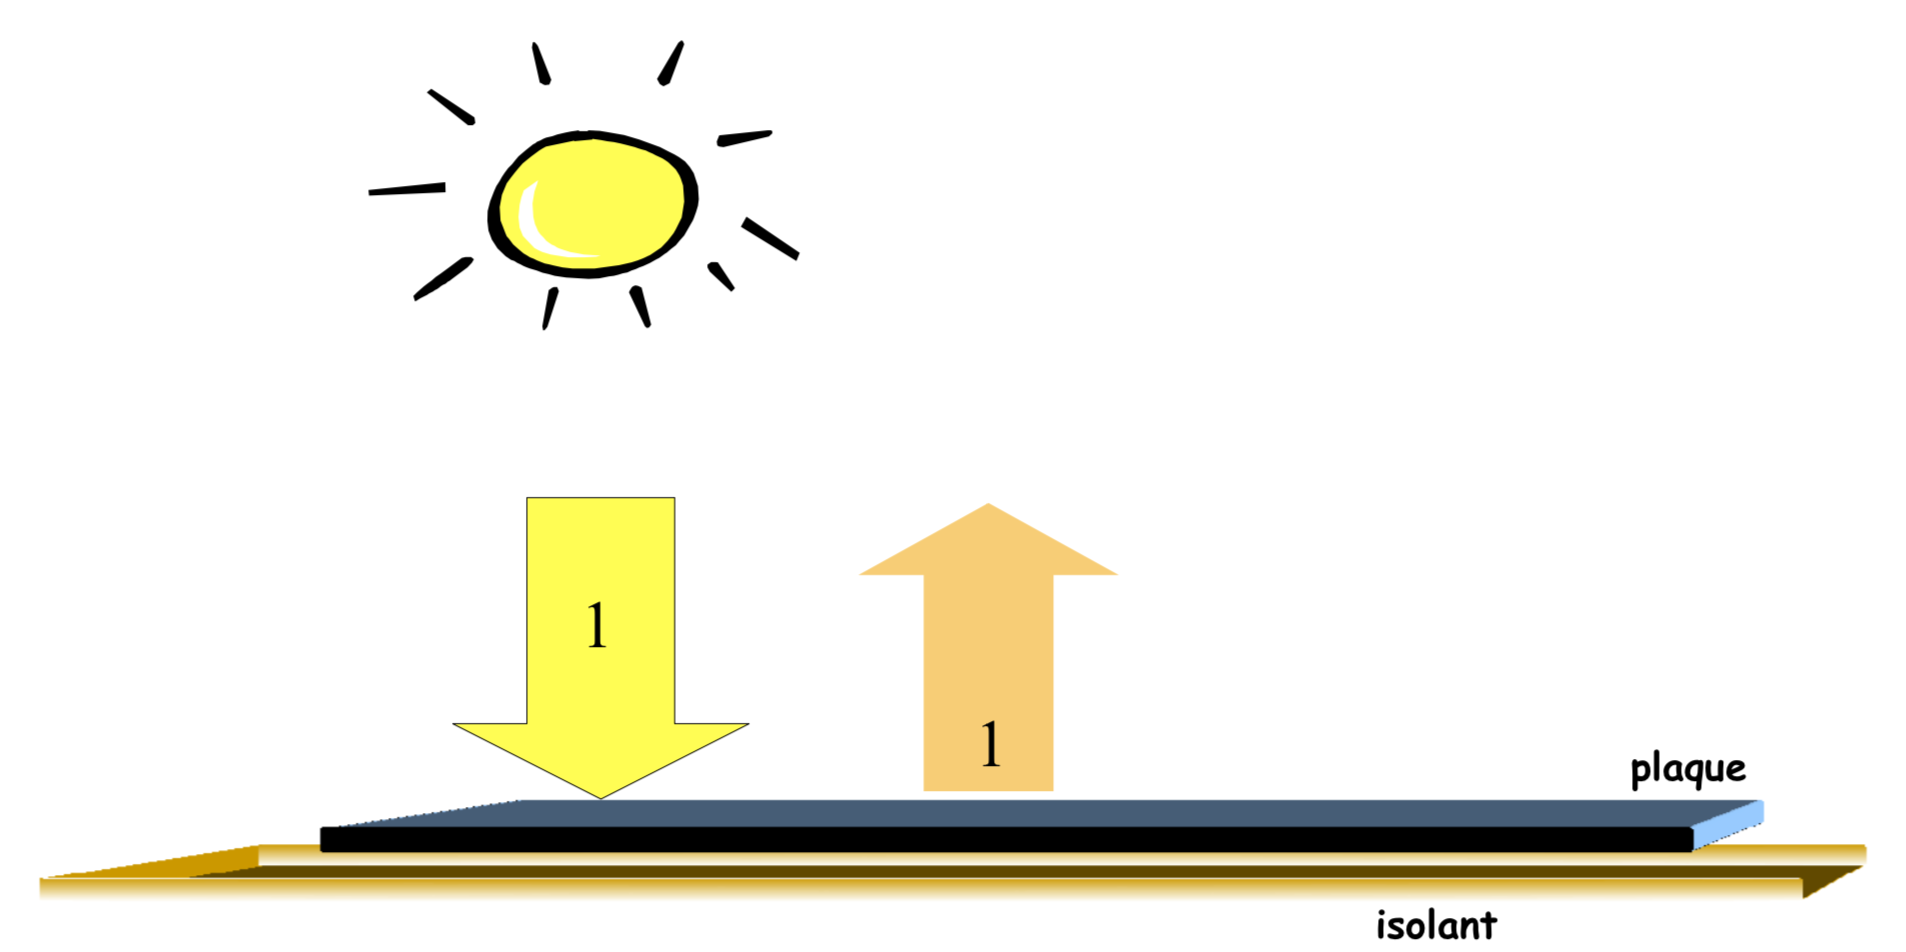 La plaque noire est placée au soleil et a atteint son équilibre thermique